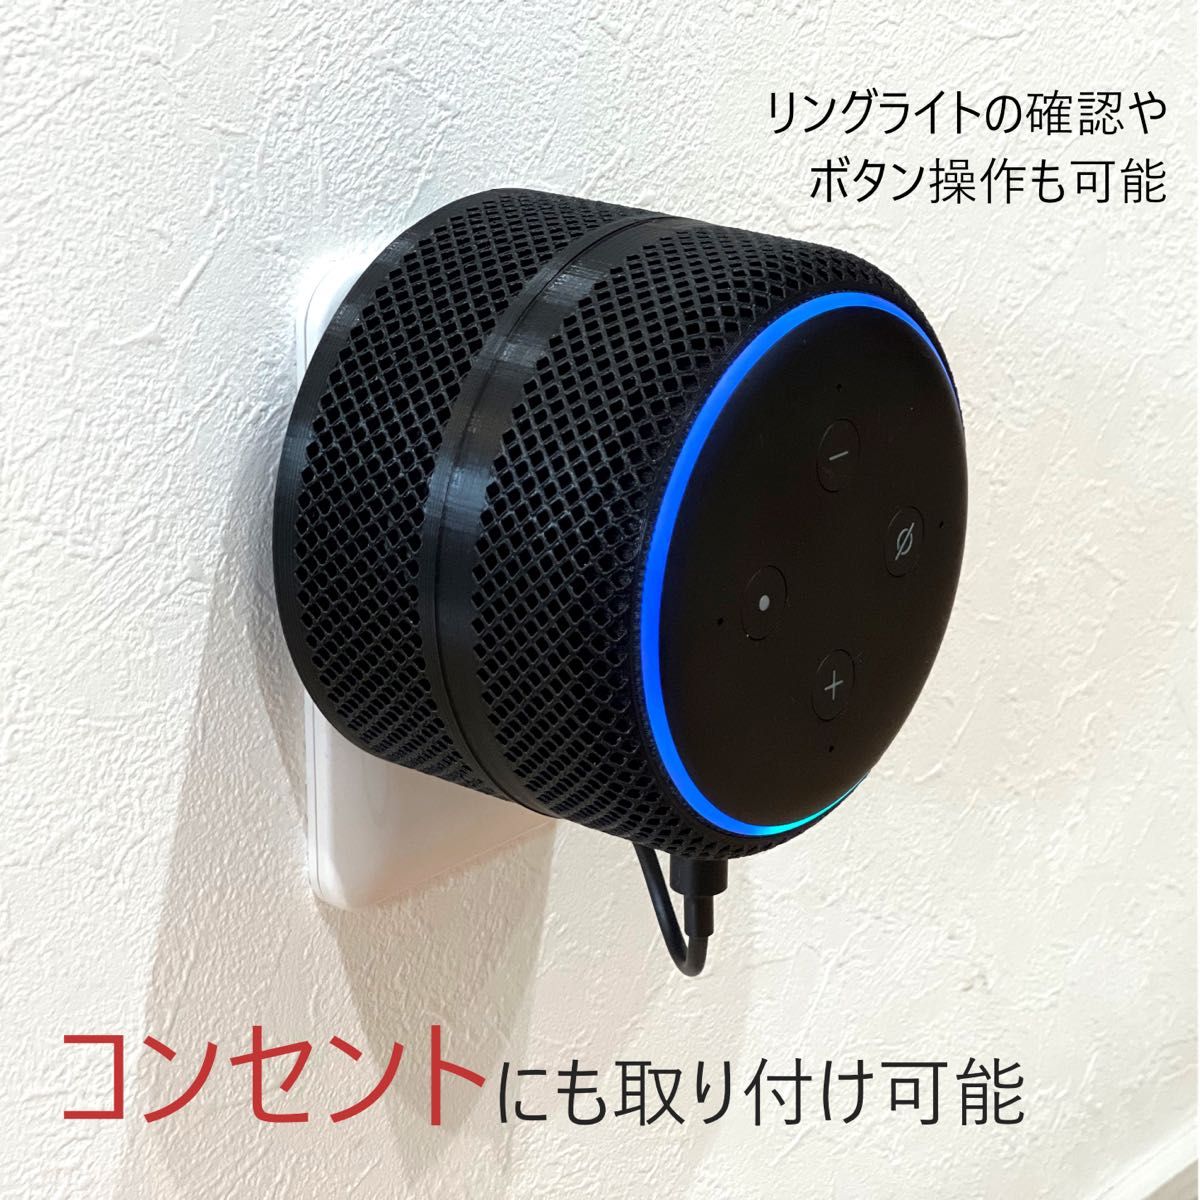 【2個】Echo Dot 第3世代 ライティングレール取付ユニット[A3S]